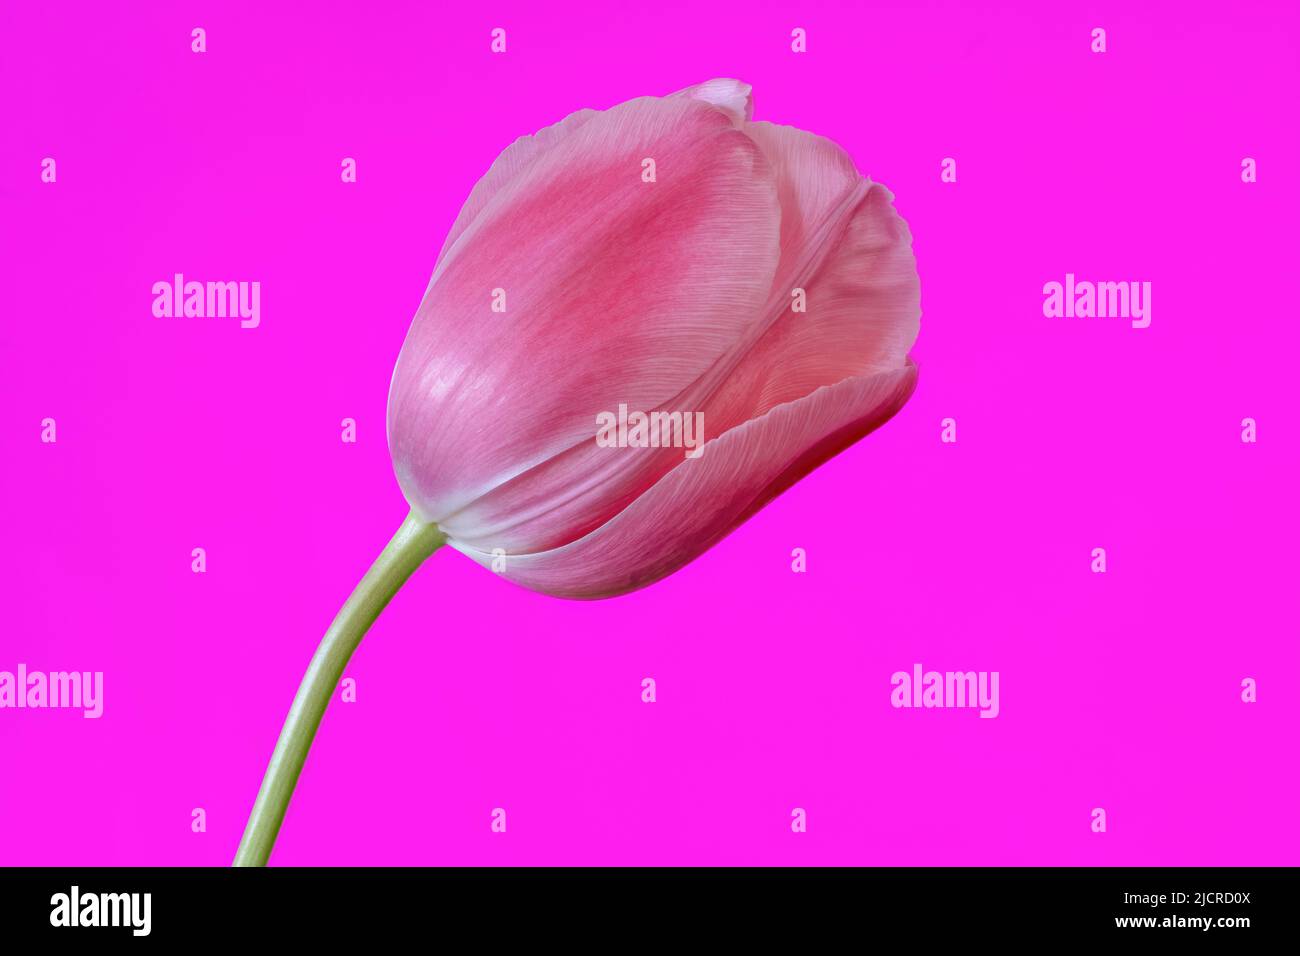 Un bel fiore di tulipano rosa fotografato su uno sfondo rosa brillante Foto Stock